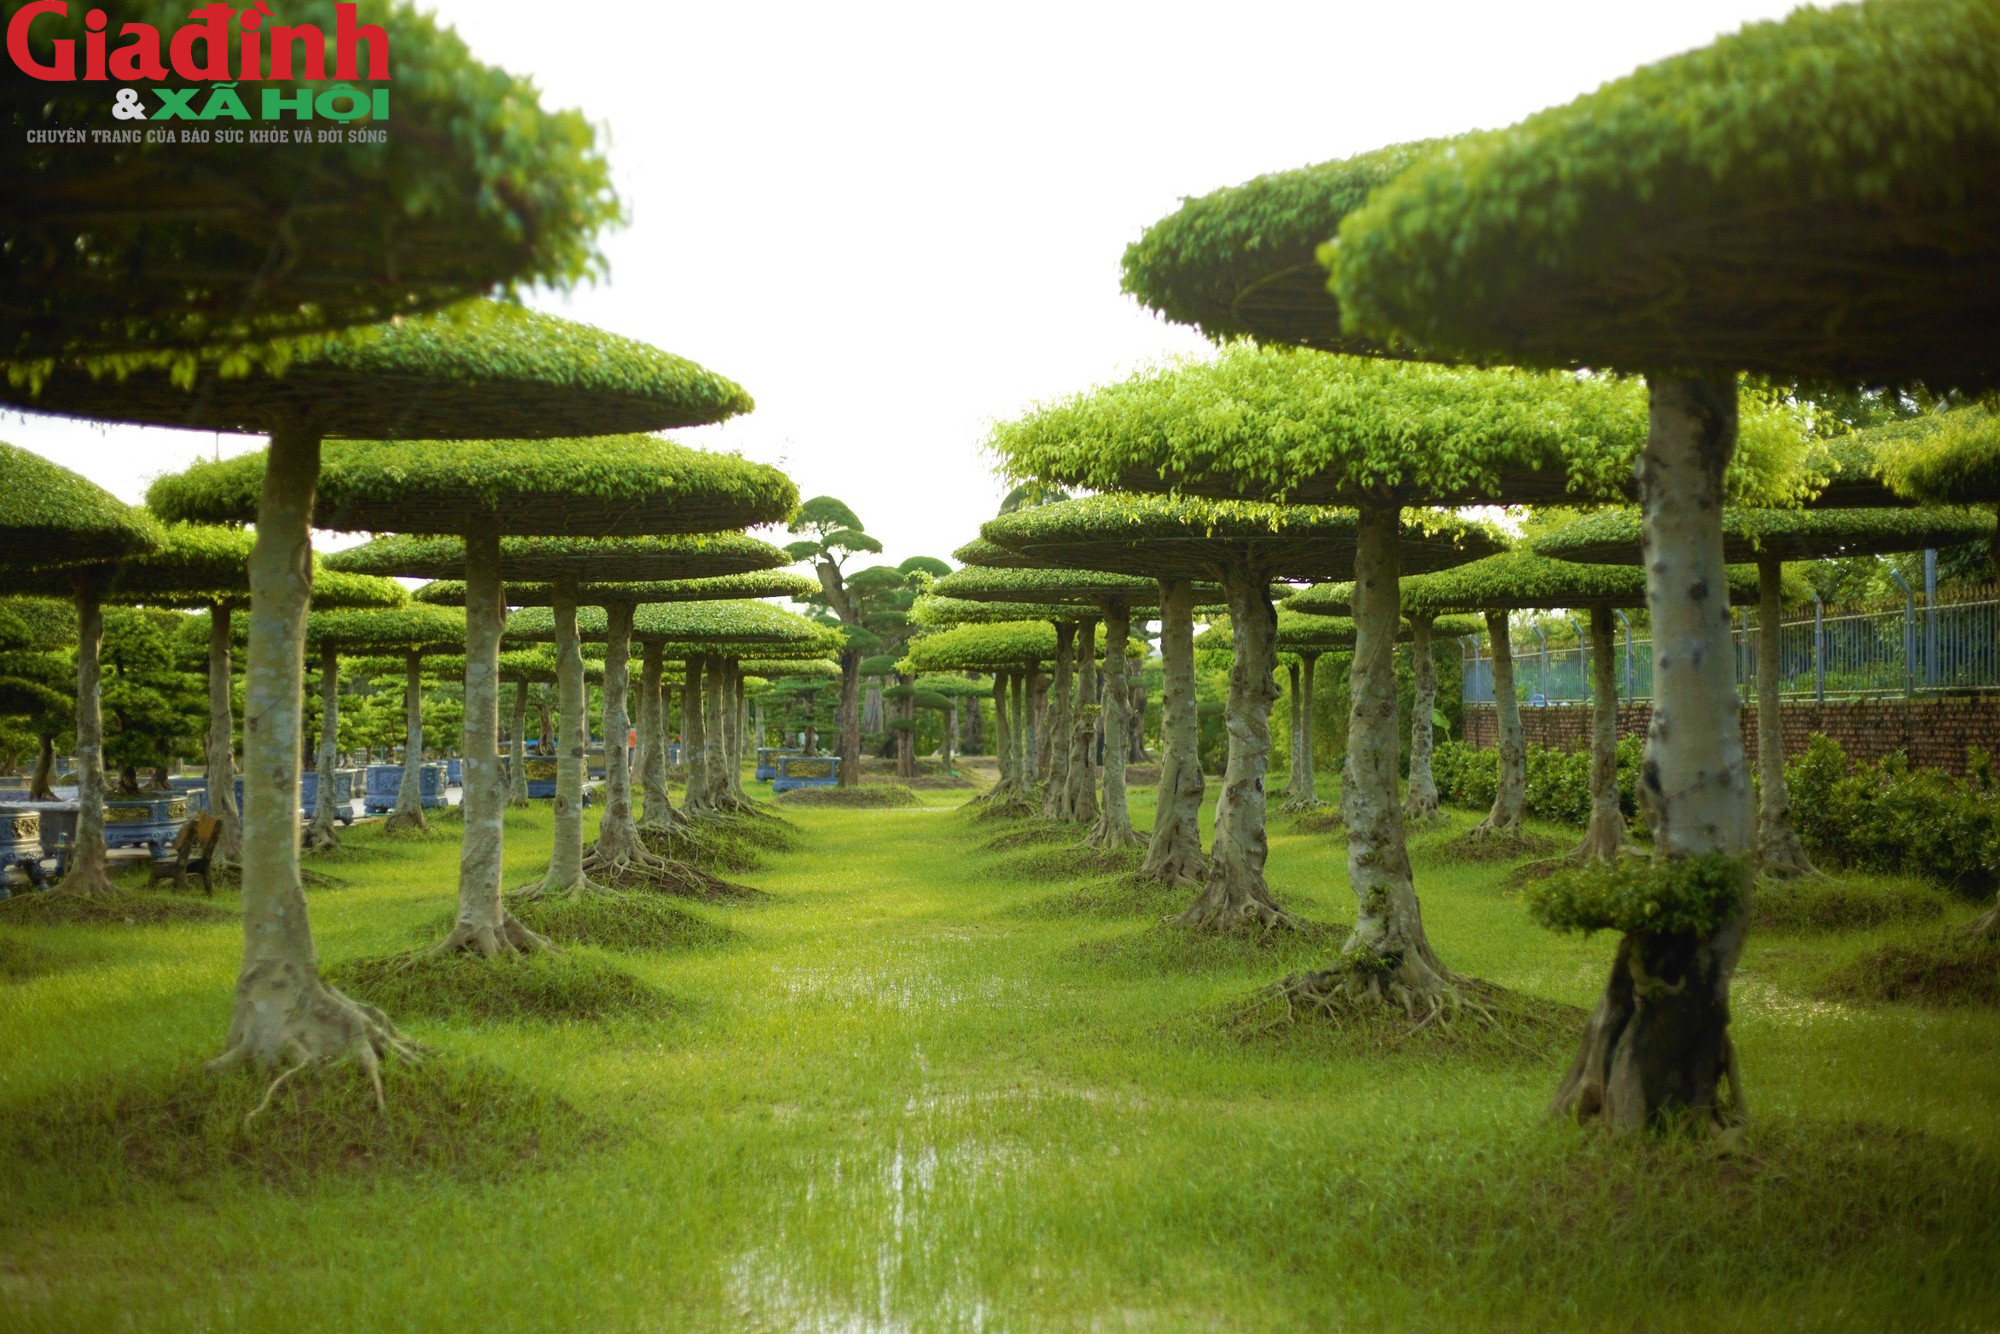 Những điều bí ẩn về nguồn gốc làng cây cảnh hơn 800 năm ở Nam Định - Ảnh 1.